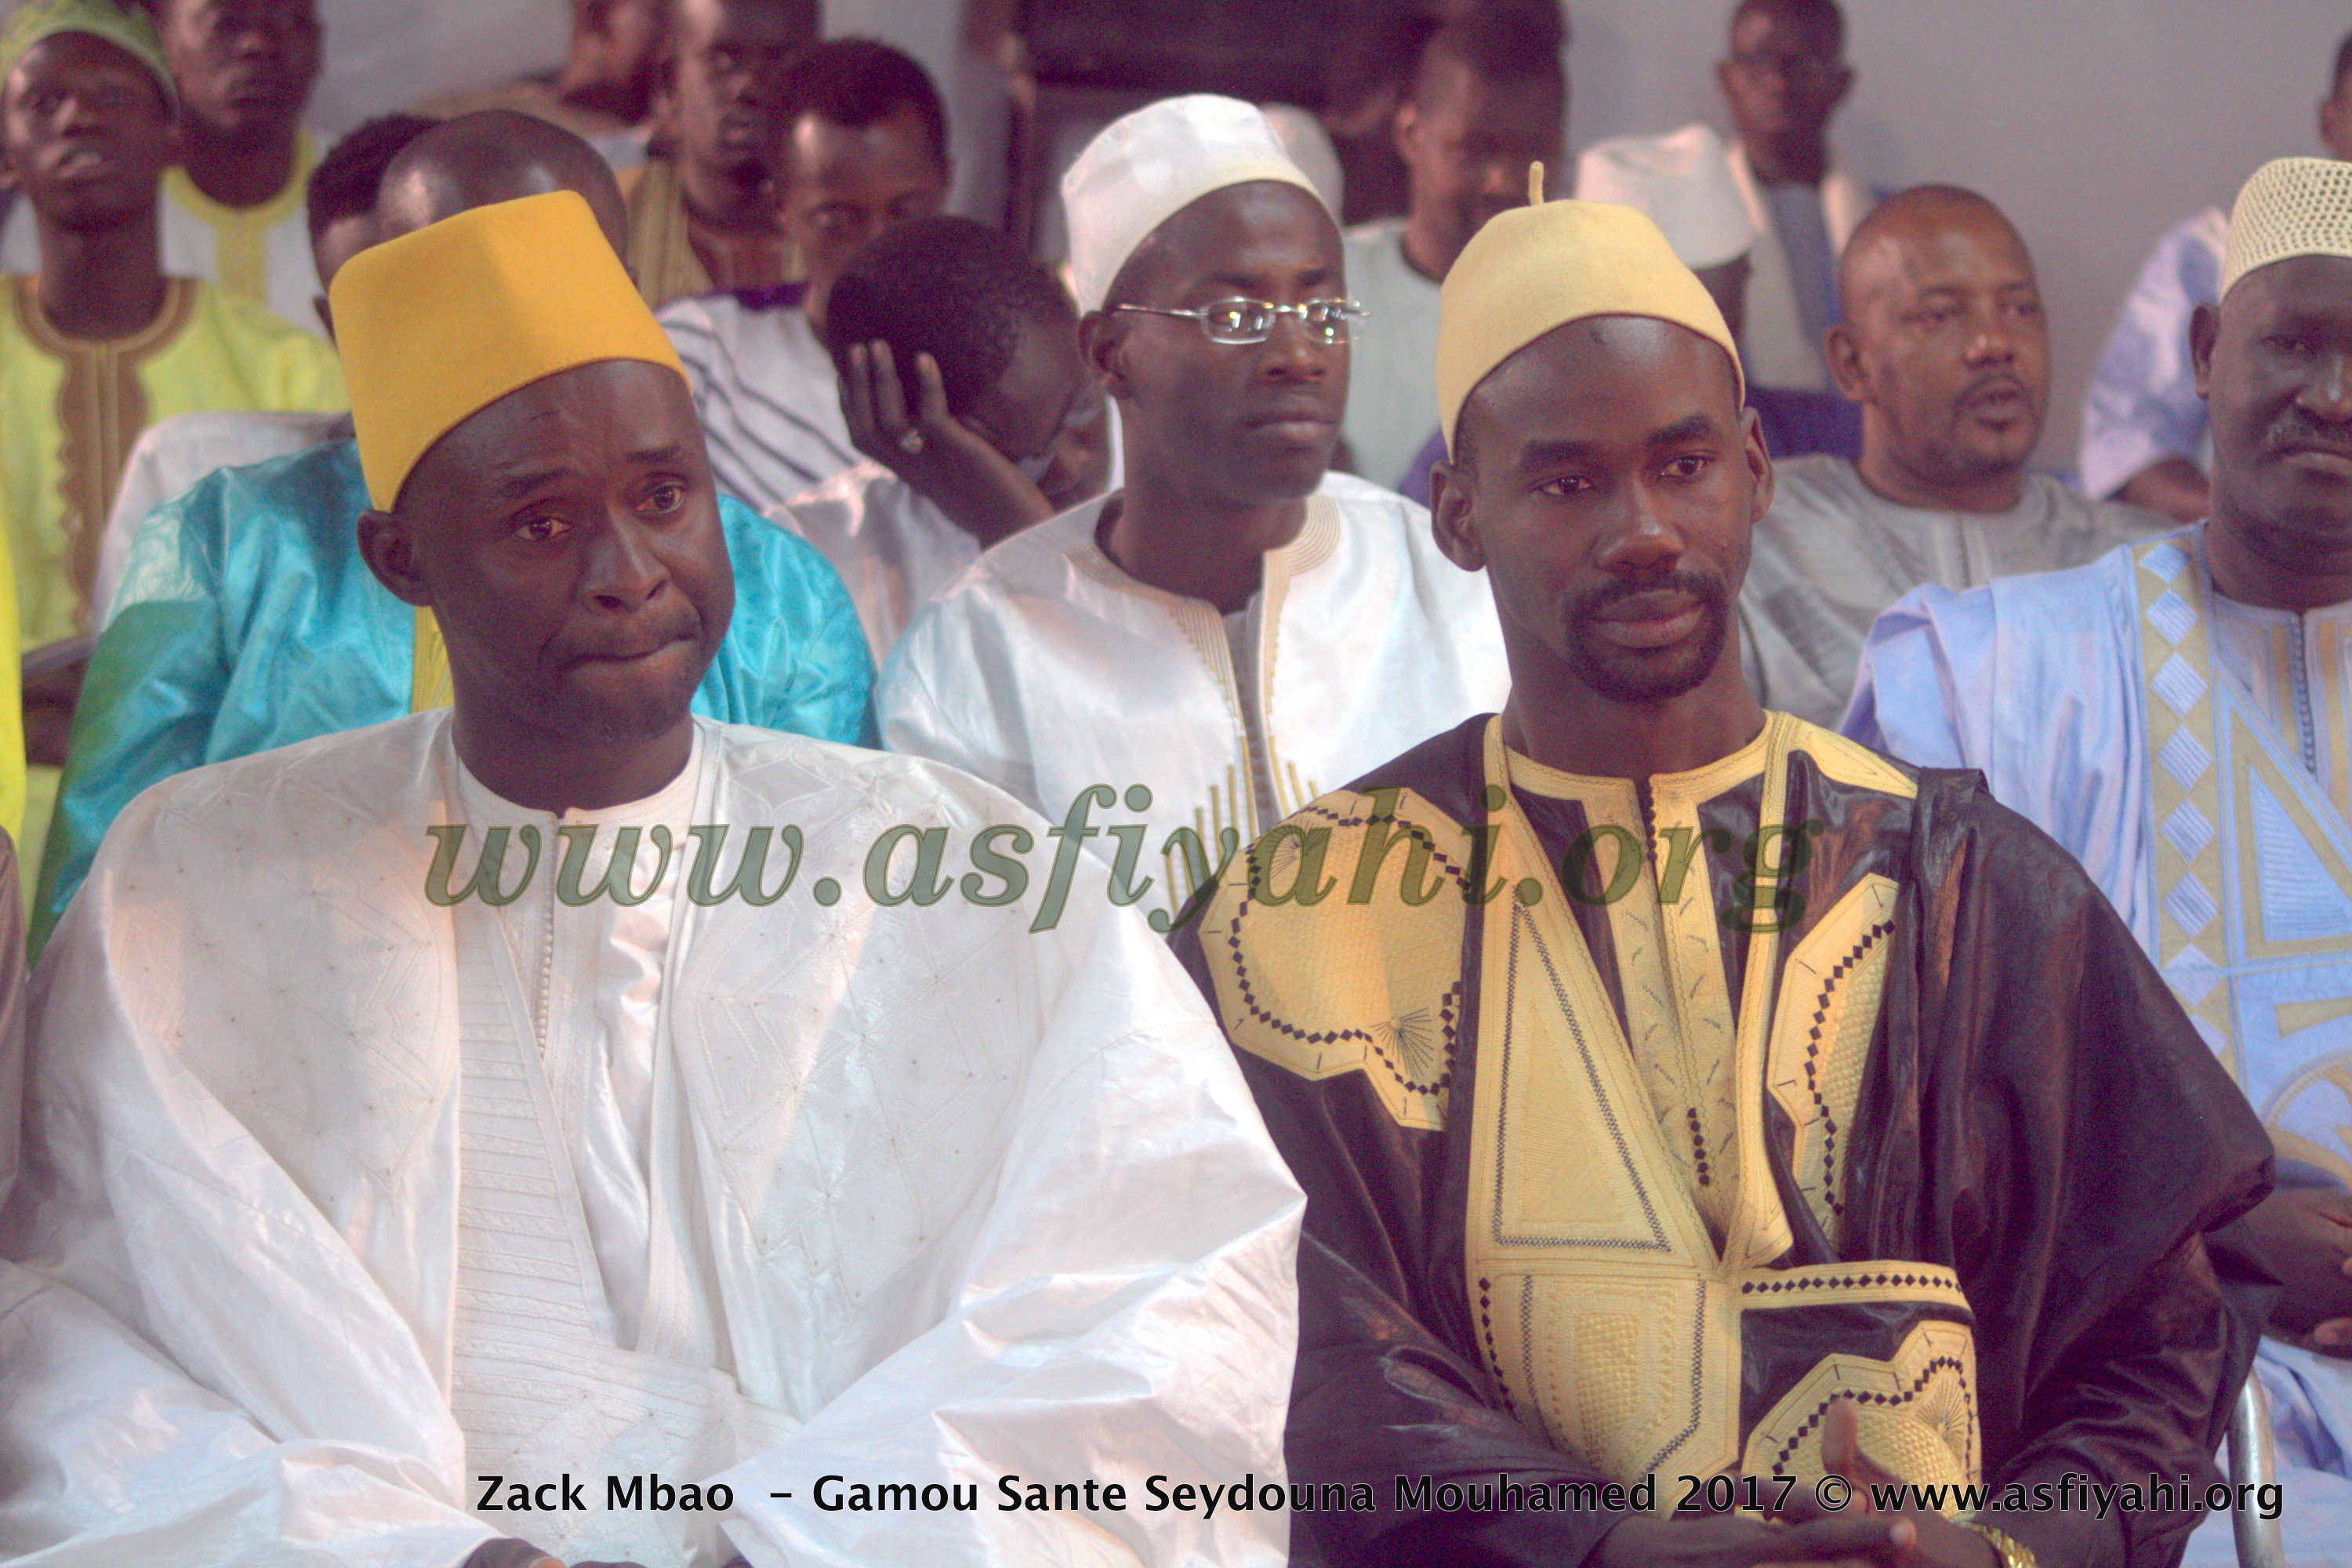 PHOTOS - ZAC MBAO 2017 - Les Images du Gamou Sant Seydina Mouhamed (saw) organisé par Imam Modou Cissé Djité